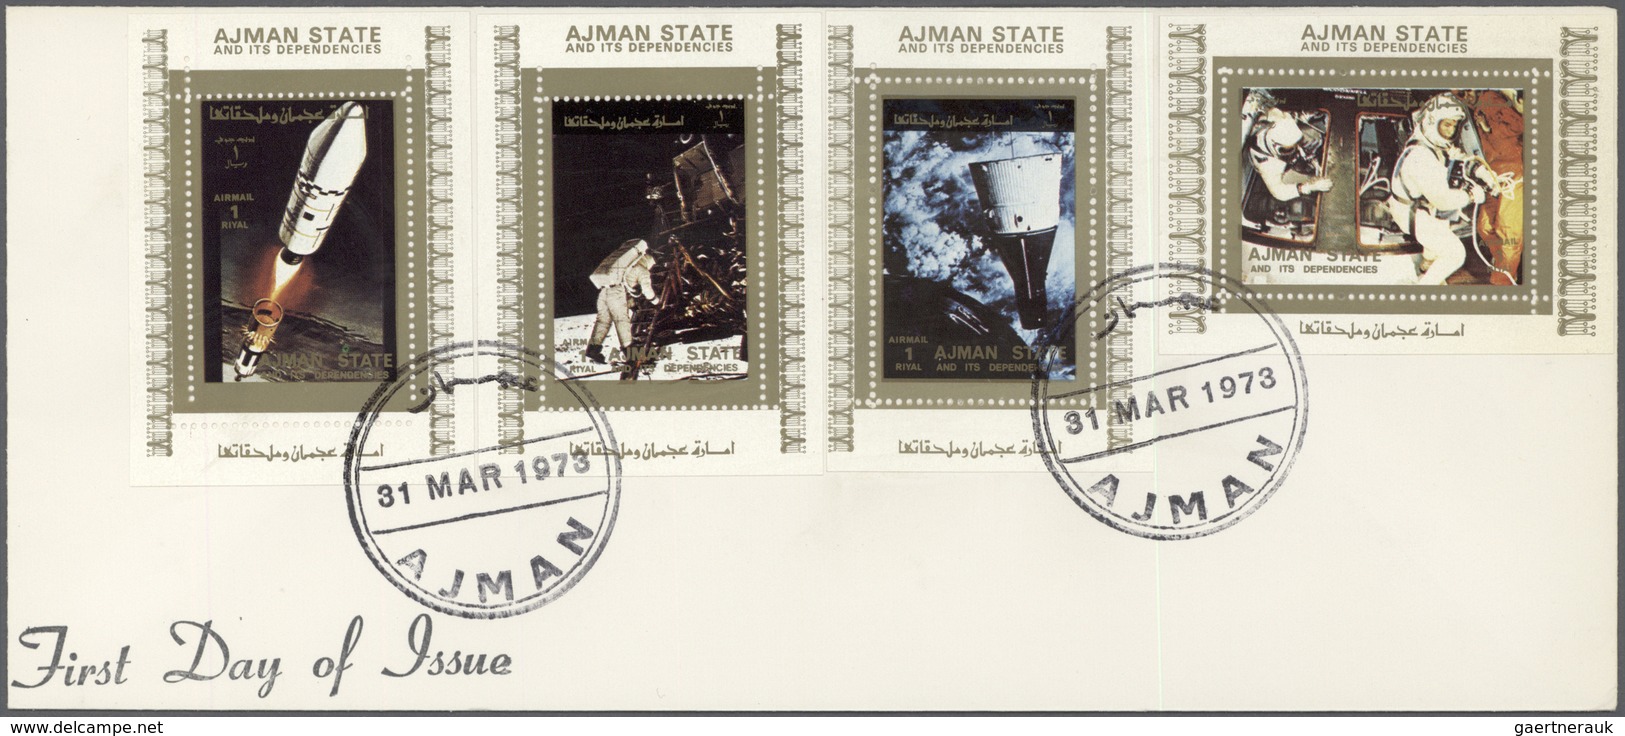 Adschman / Ajman: 1969/1973, assortment incl. f.d.c./covers, de luxe sheets, imperforate composite p